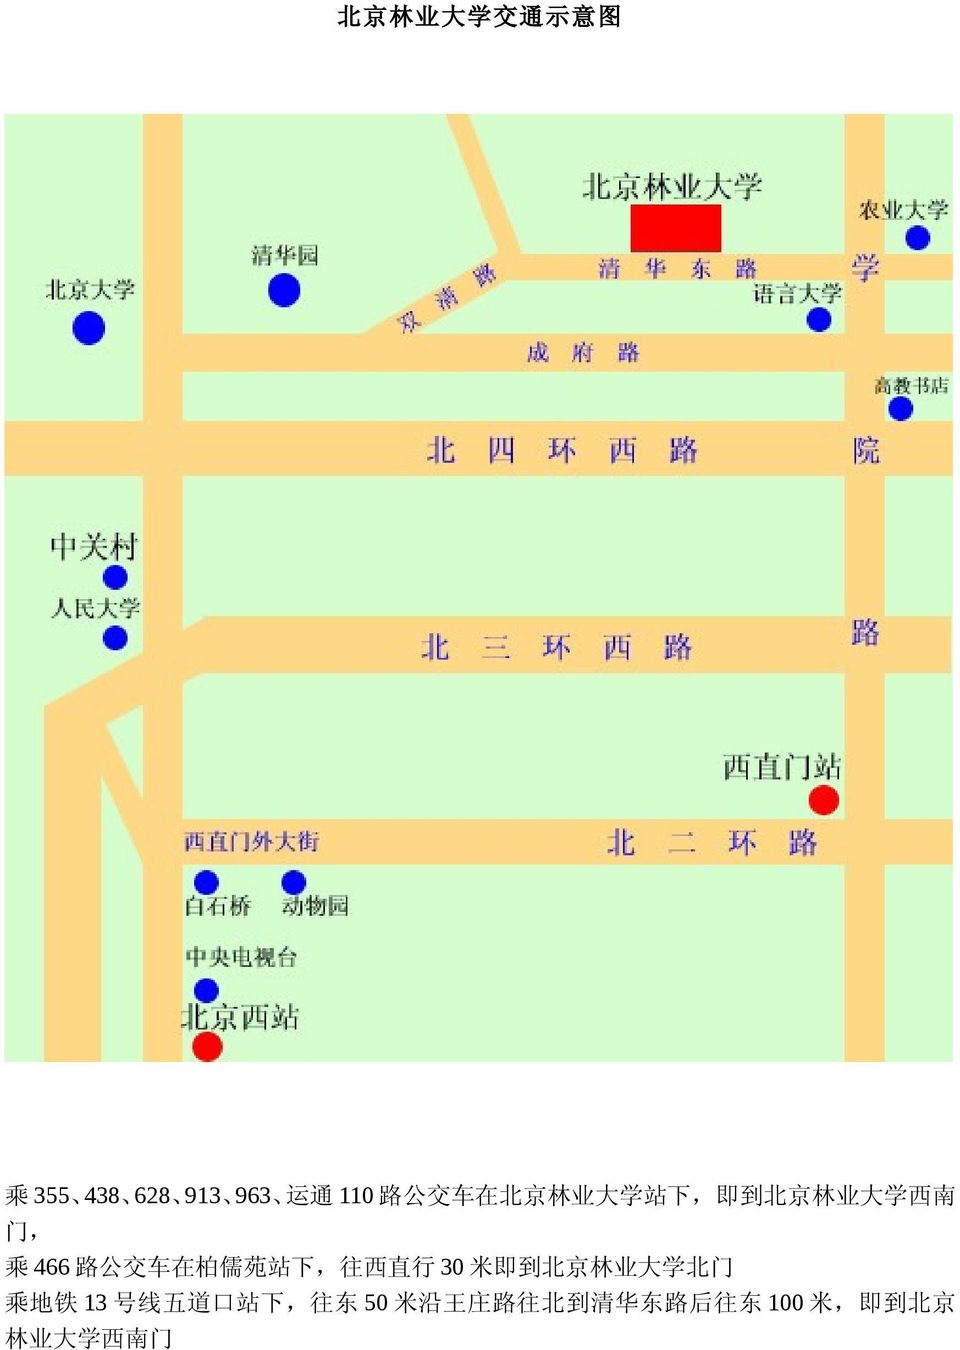 站 下, 往 西 直 行 30 米 即 到 北 京 林 业 大 学 北 门 乘 地 铁 13 号 线 五 道 口 站 下,